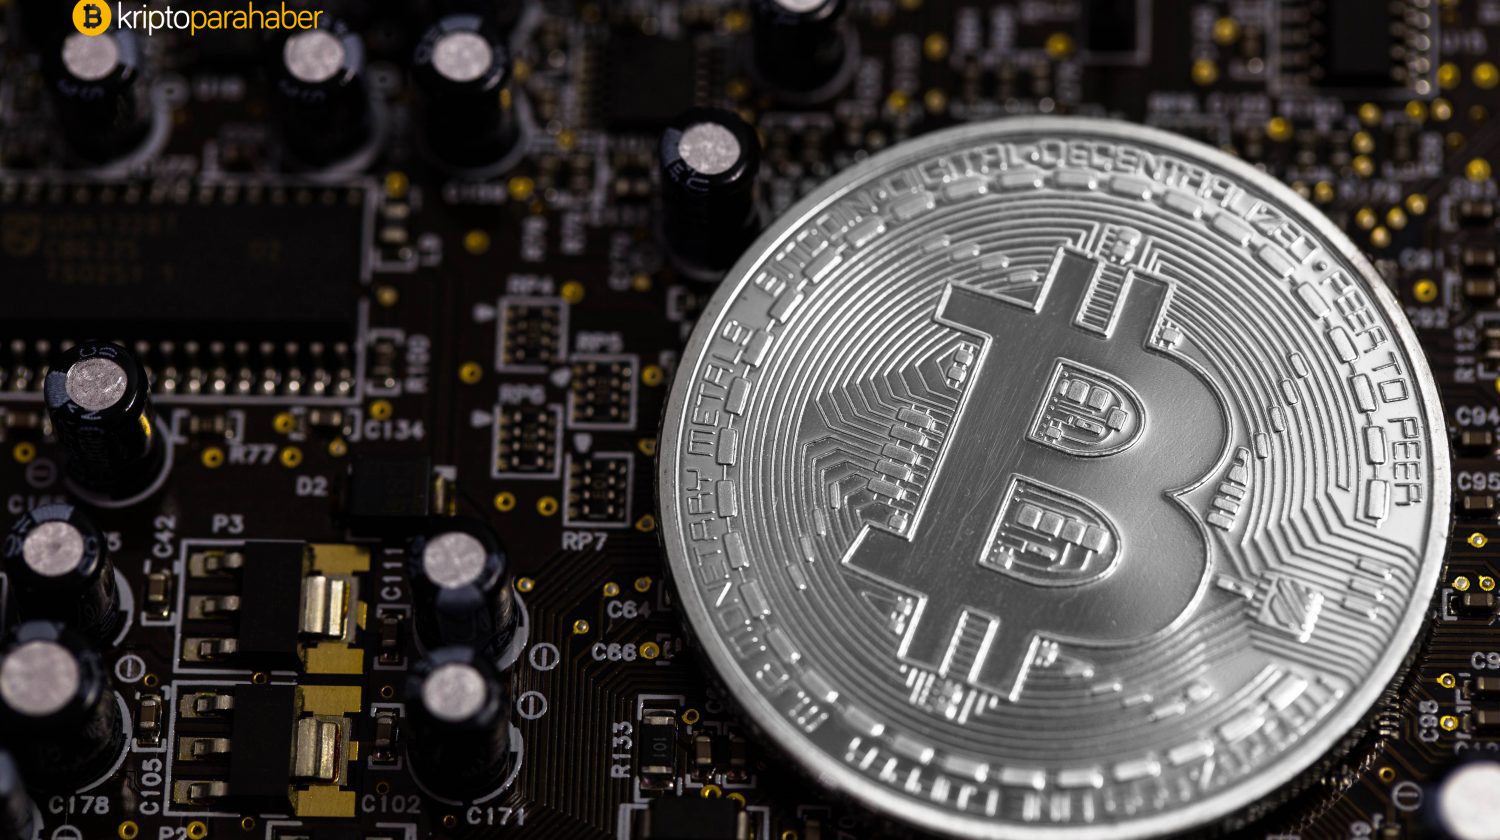 Bitcoin rallisinin henüz başında olduğumuzu gösteren 5 kritik işaret